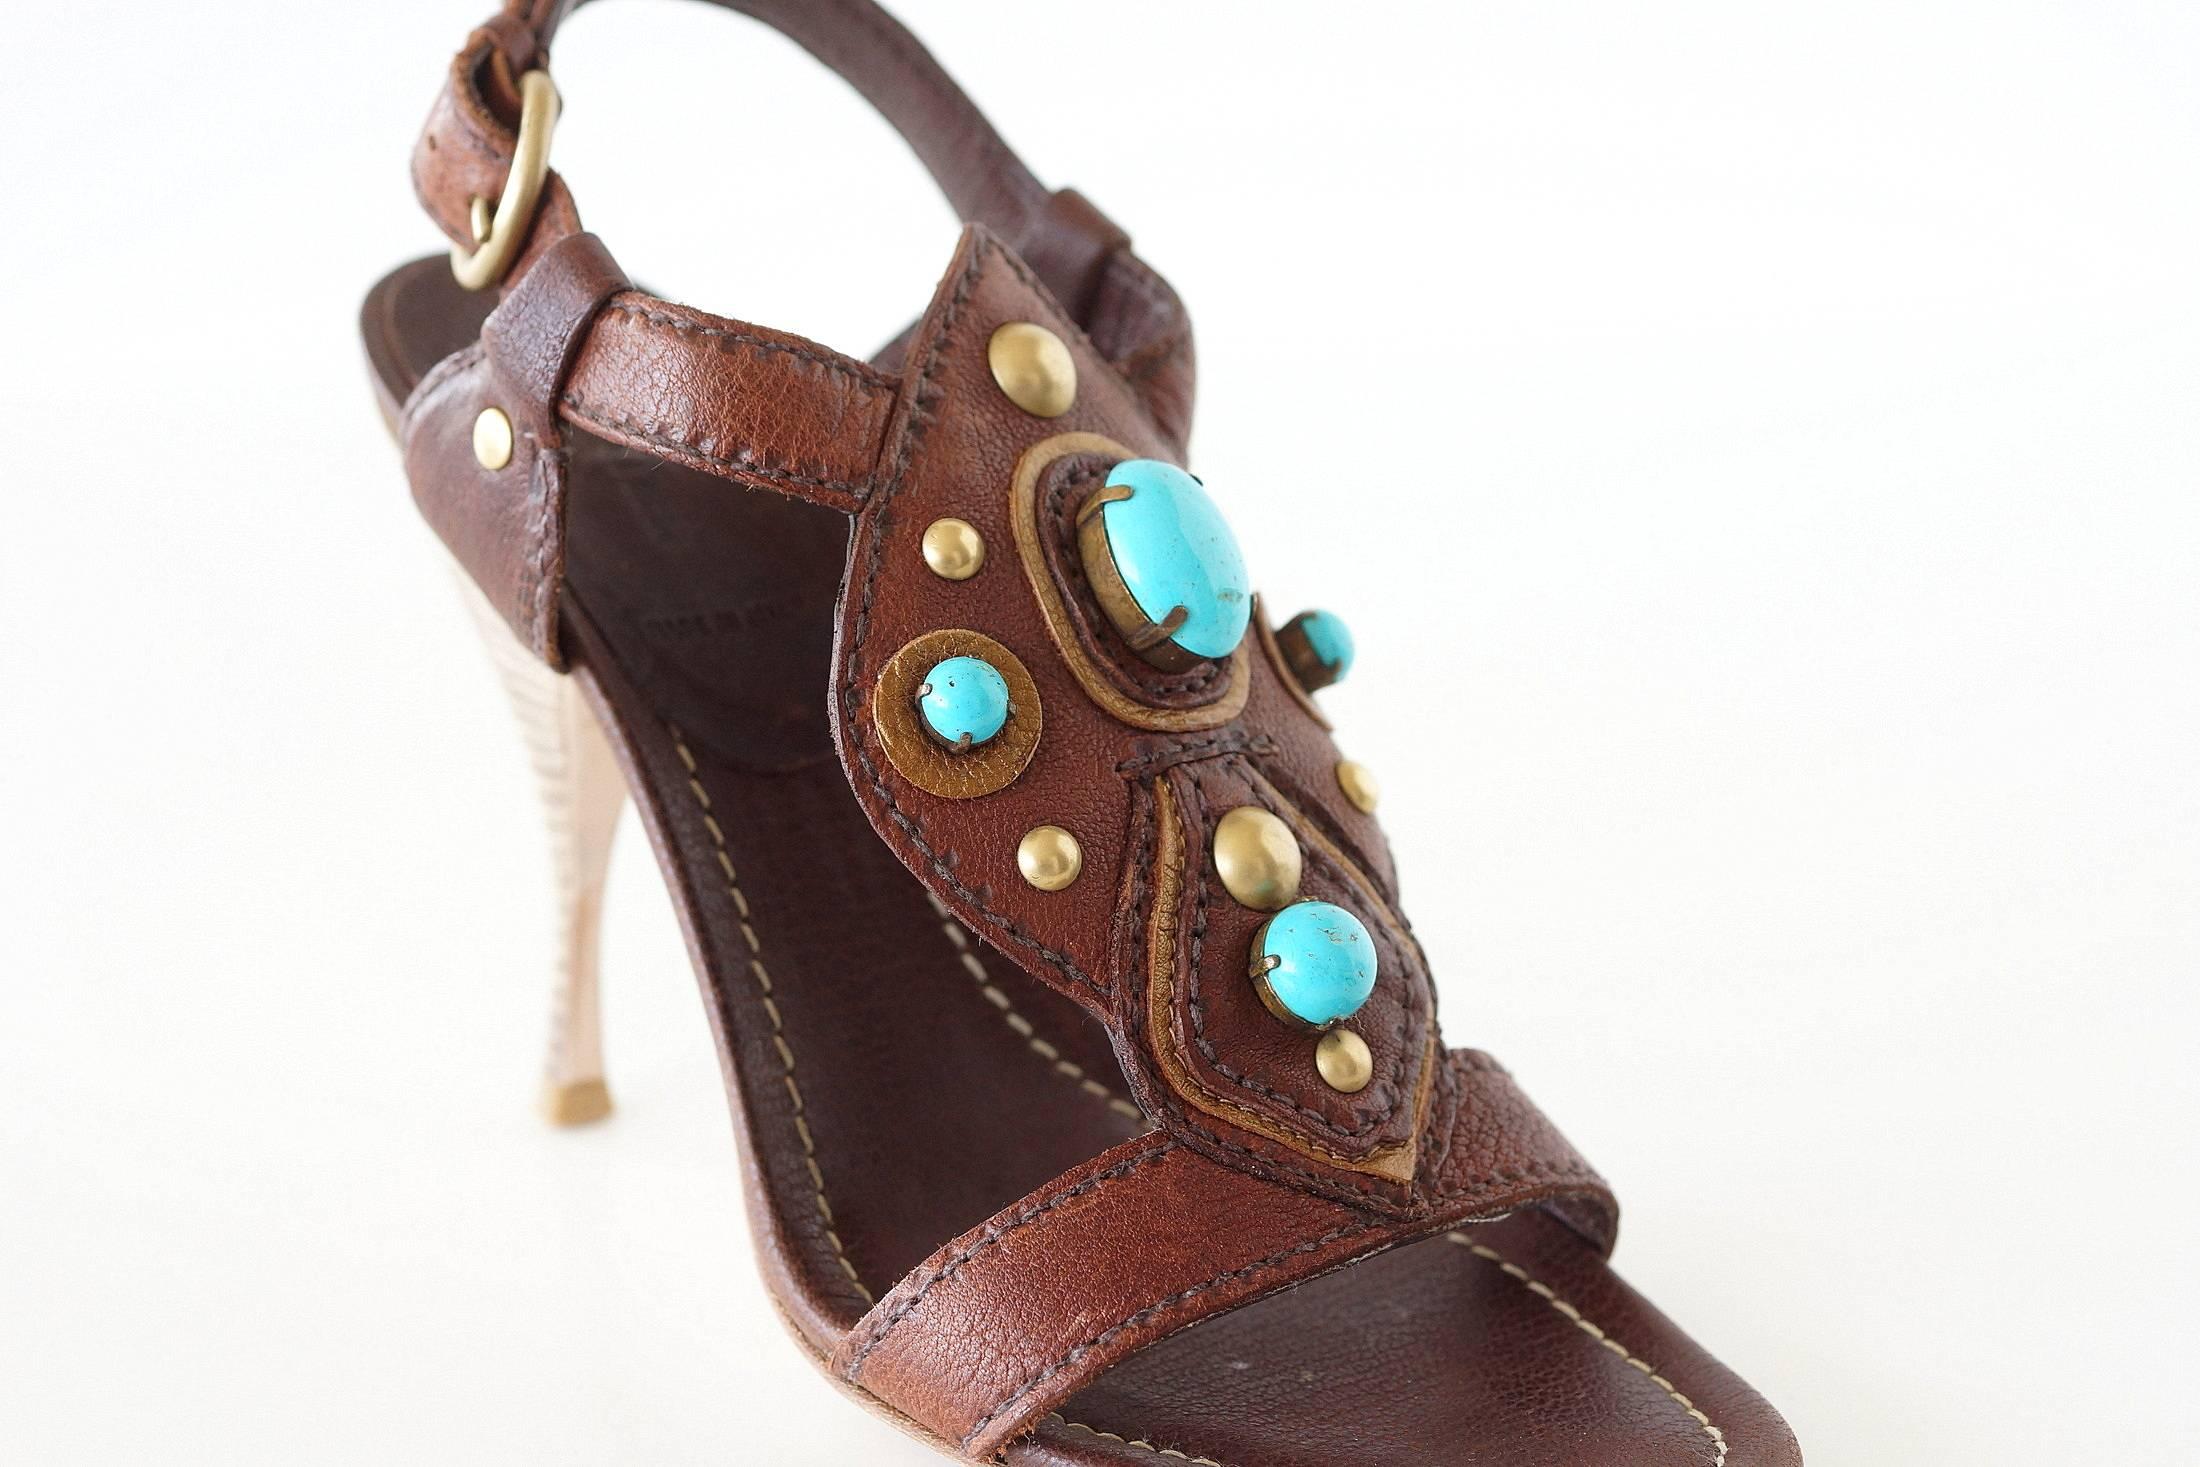 Garantiert authentischer Miu Miu Schuh aus reichem braunem Büffelleder.
Der obere Teil des Fußes ist mit fabelhaften Lederarbeiten versehen, die mit türkisfarbenen Steinen und Messingnieten akzentuiert sind.
Bronzegoldener Lederbesatz um die